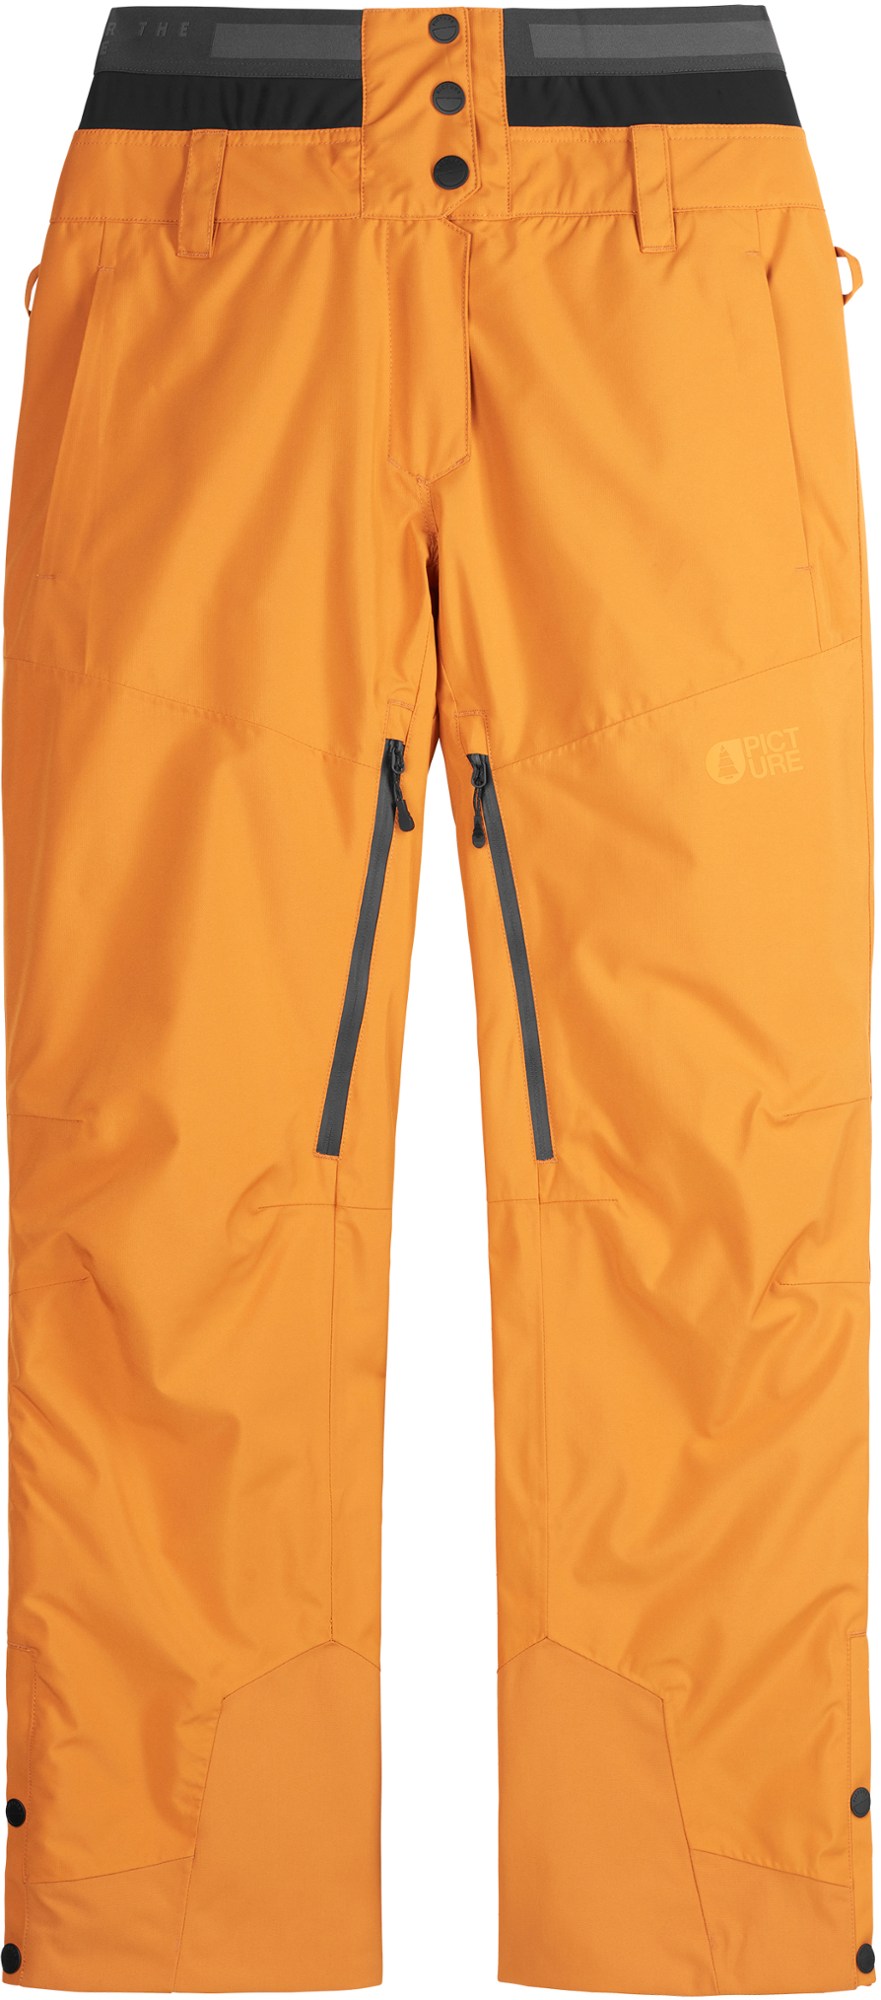 высокие топы pila женские picture organic цвет dark sea Зимние брюки Exa - женские Picture Organic Clothing, оранжевый